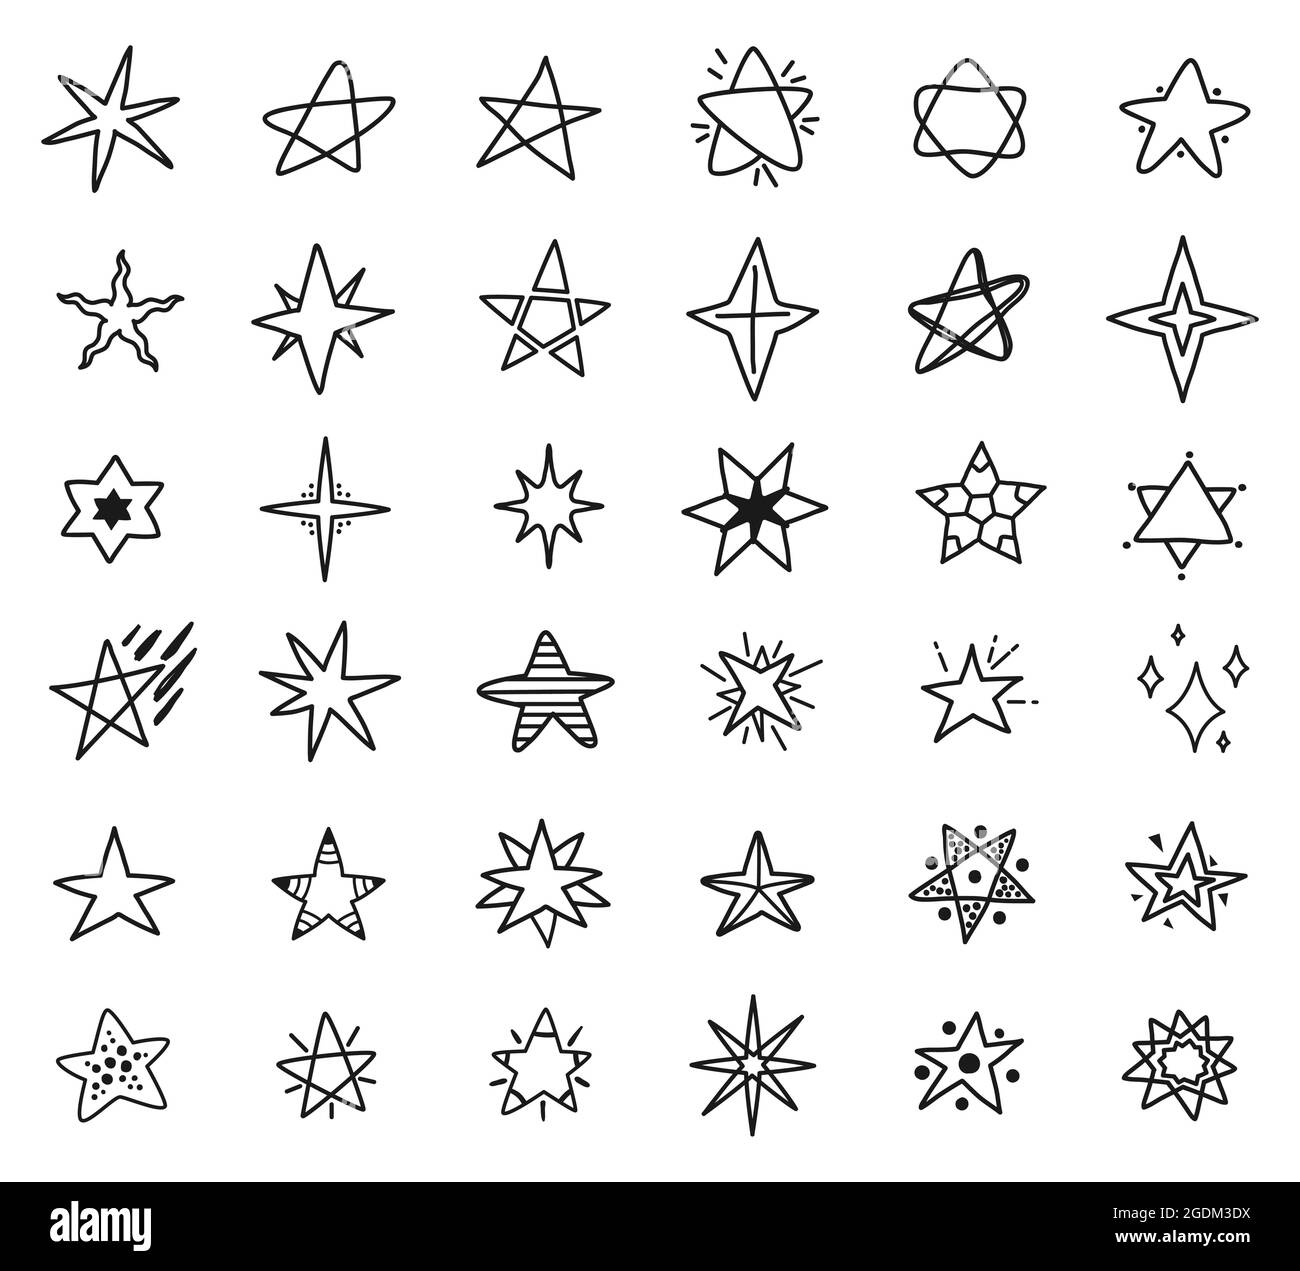 Dibujando estrellas Imágenes de stock en blanco y negro - Alamy